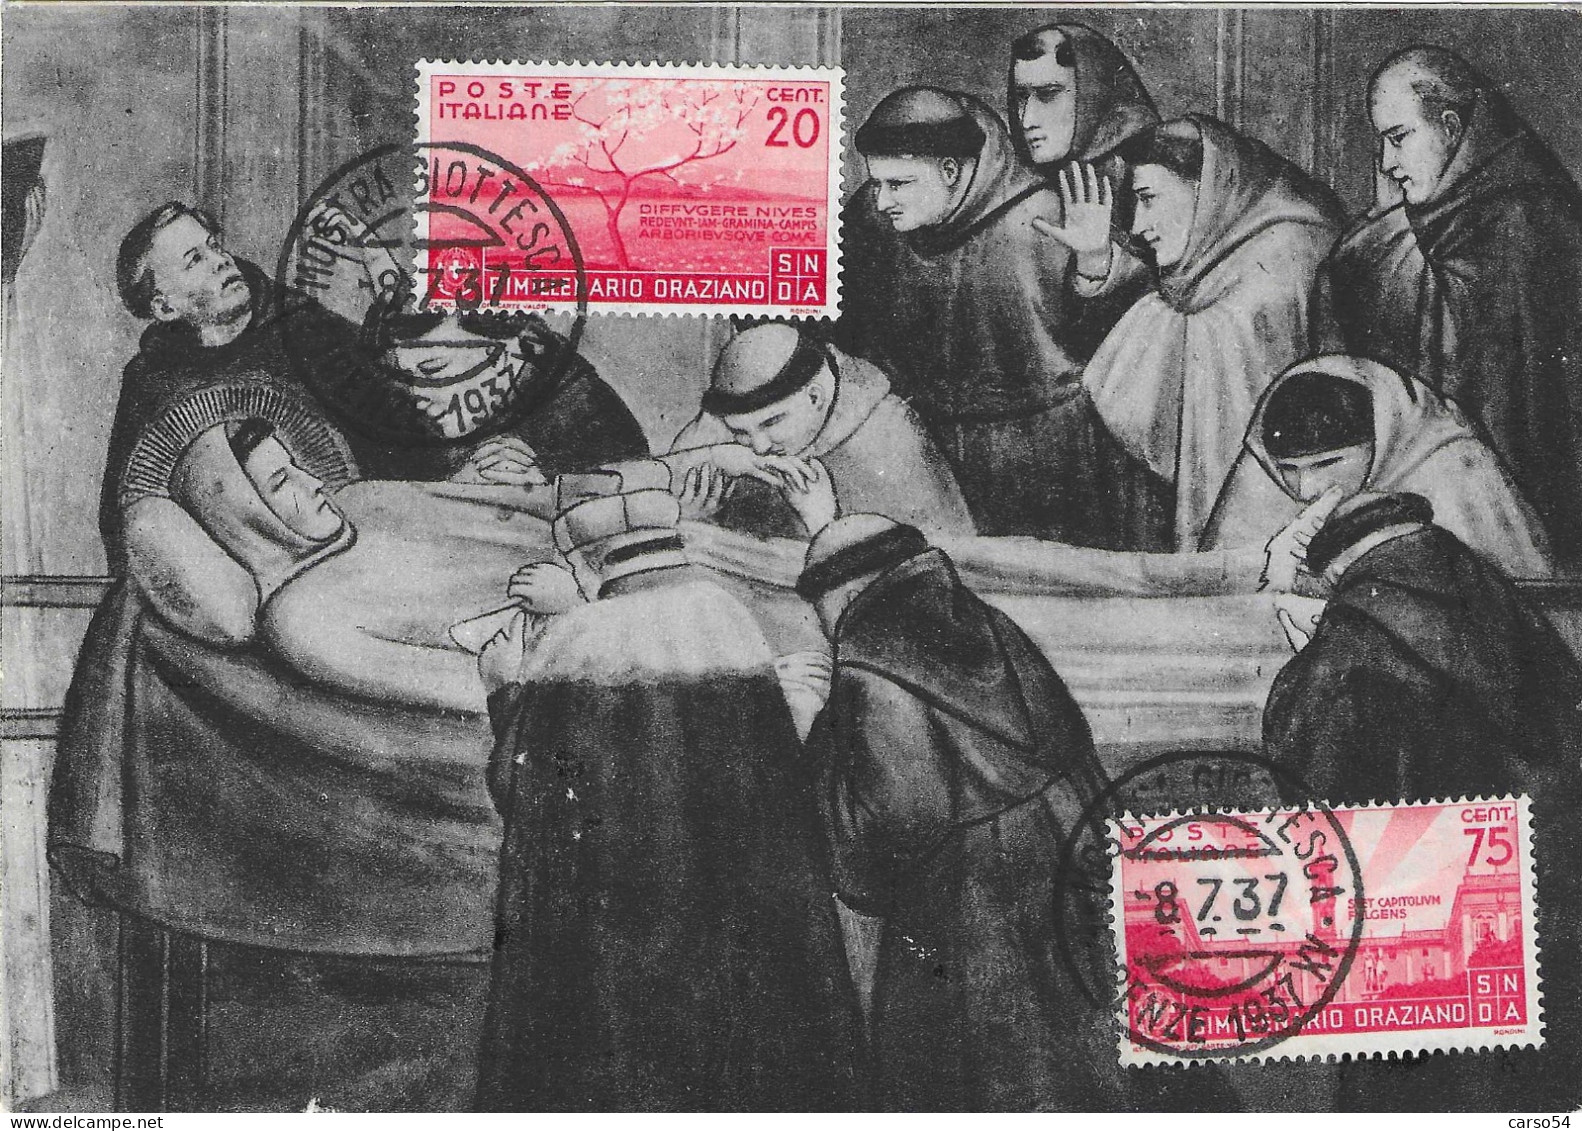 1937 - VI CENTENARIO MORTE DI GIOTTO - FIRENZE MOSTRA GIOTTESCA 8.7.37 - Valore Catalogo 1.777 Euro - Storia Postale